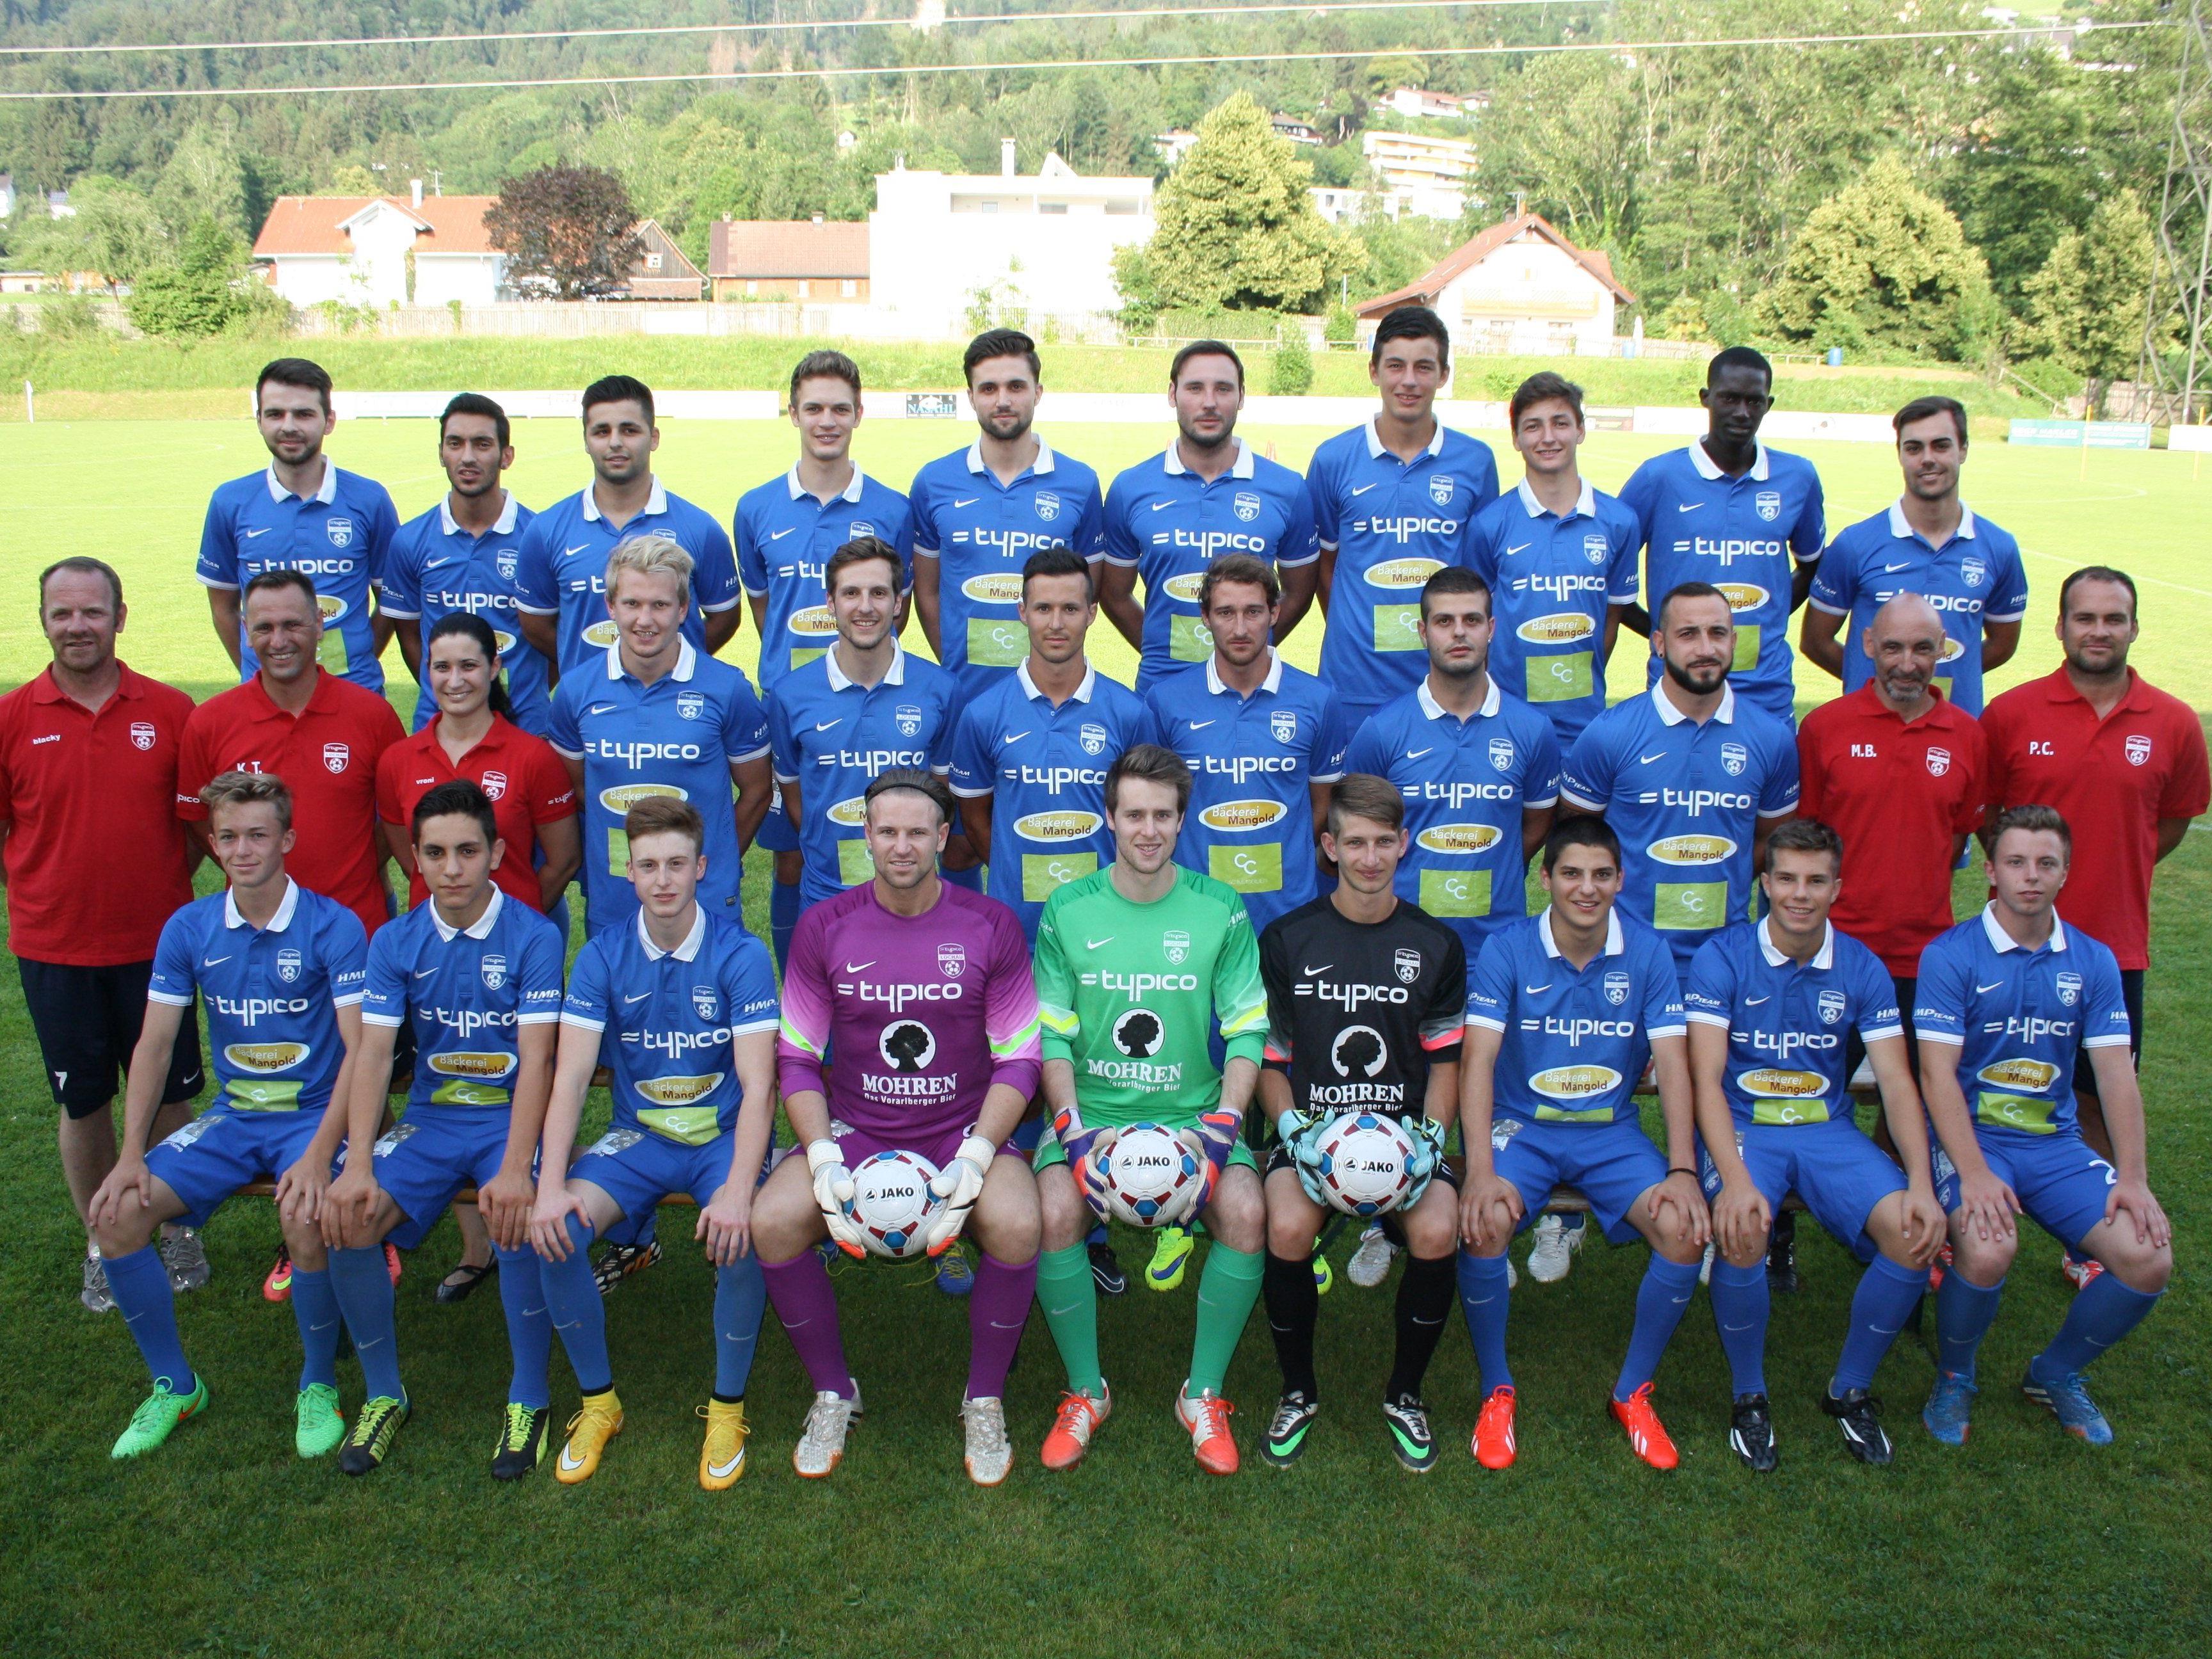 Der Kader der Kampfmannschaft des SV Typico Lochau ist für die Landesliga-Meisterschaft 2015/16 bestens aufgestellt.